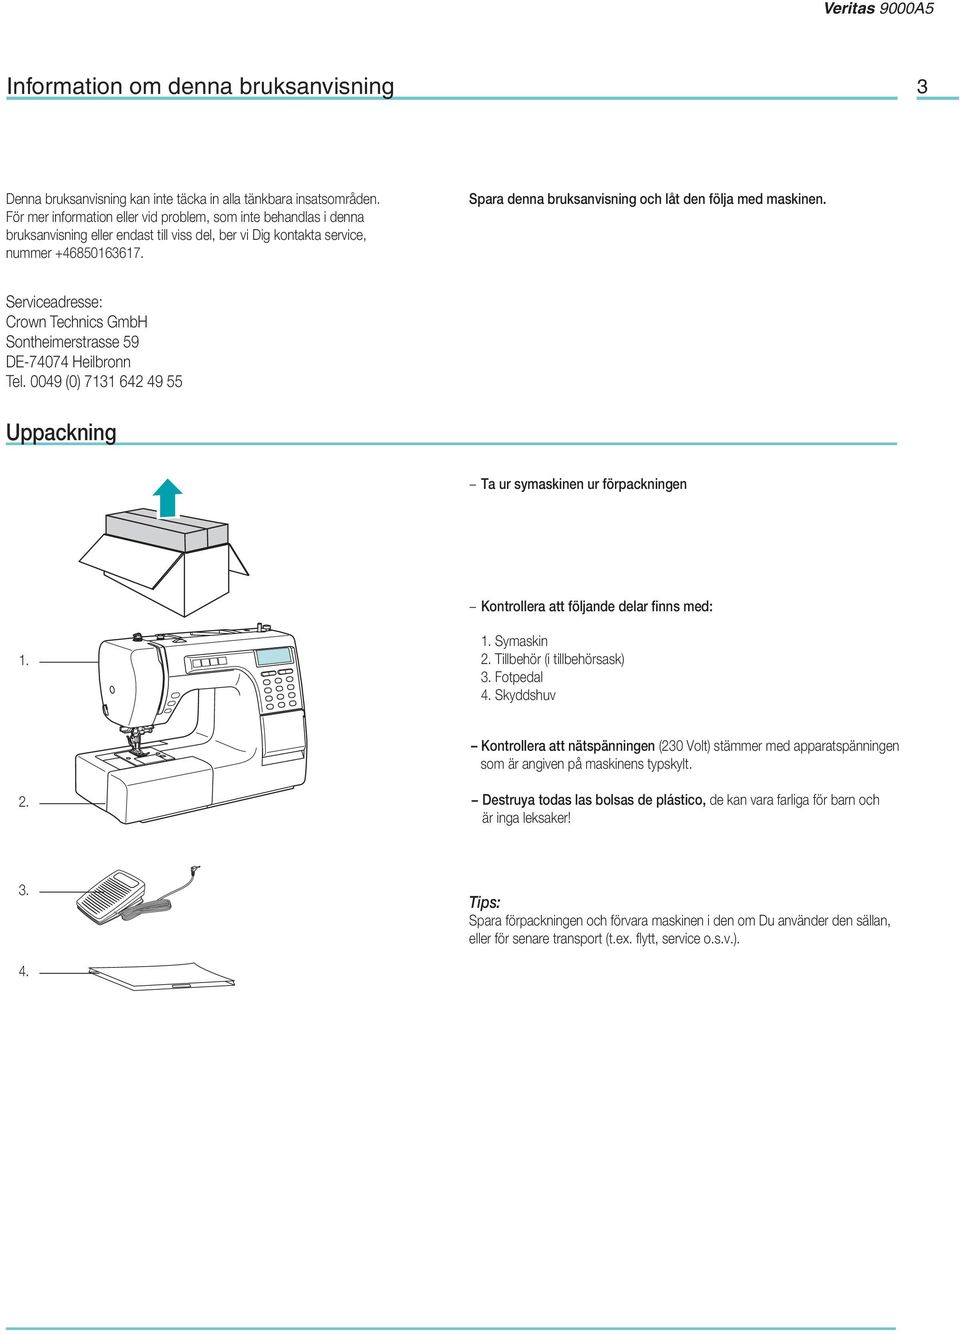 Spara denna bruksanvisning och låt den följa med maskinen. Serviceadresse: Crown Technics GmbH Sontheimerstrasse 59 DE-74074 Heilbronn Tel.